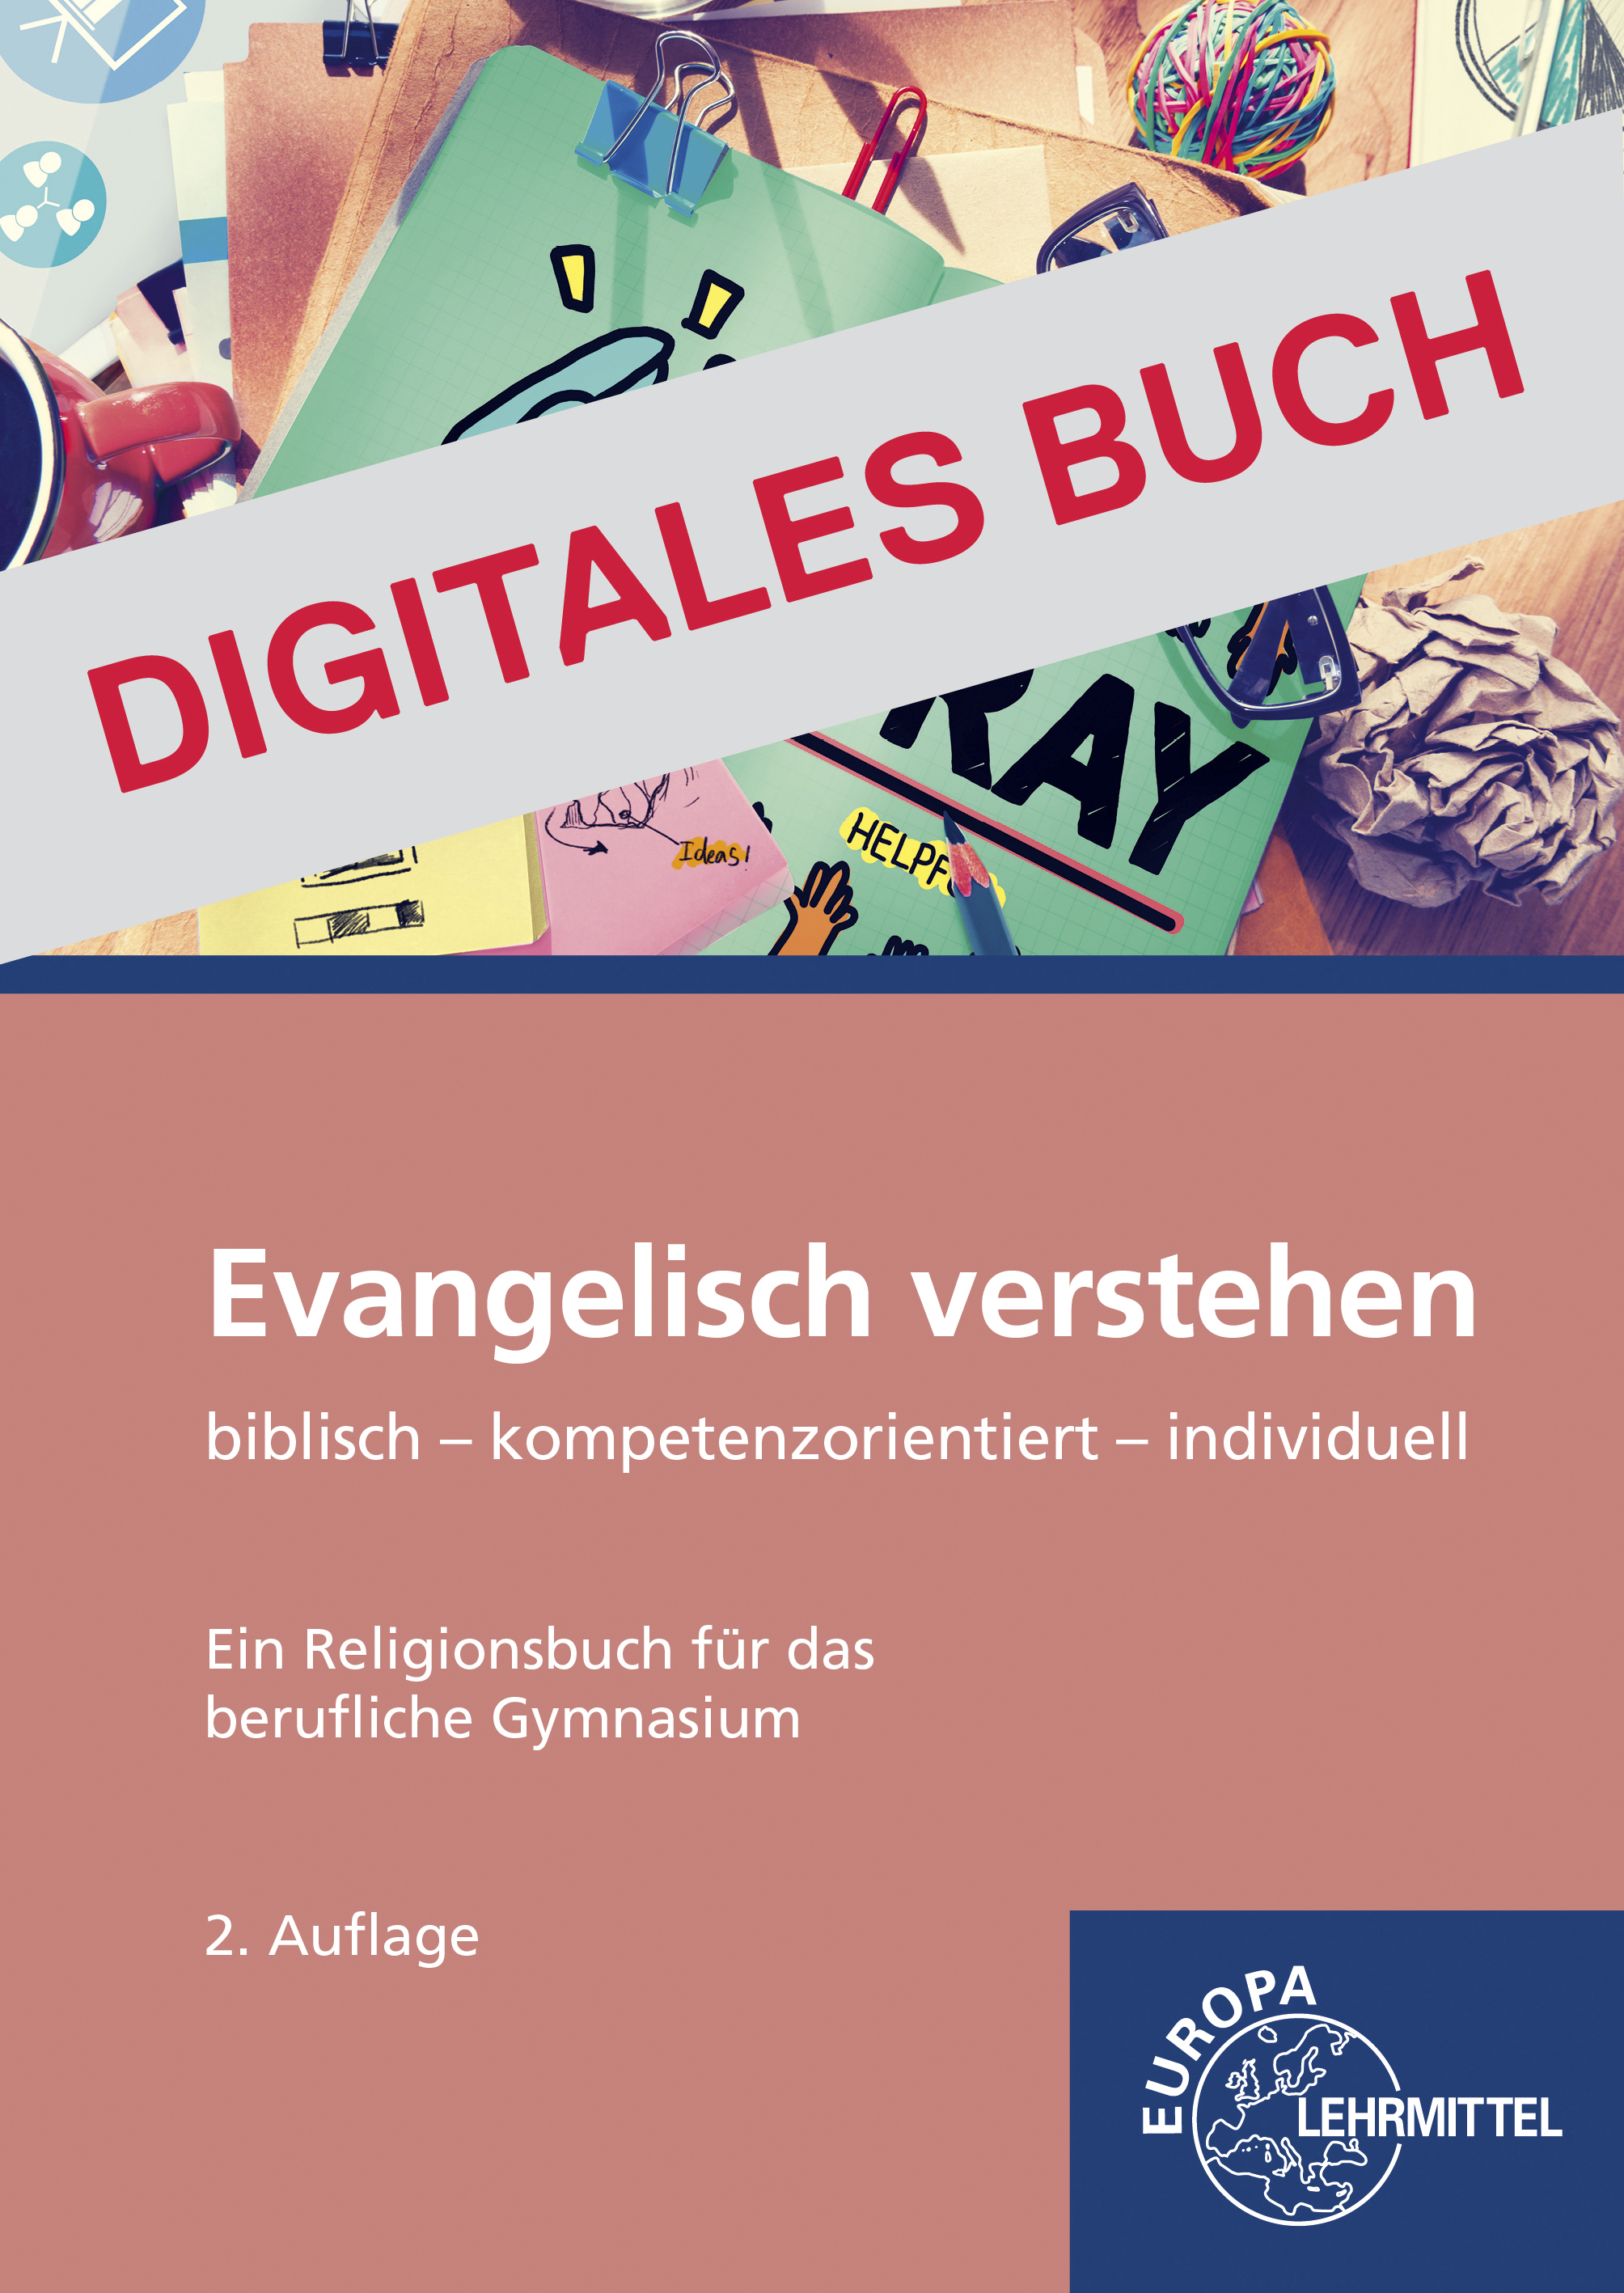 Evangelisch verstehen - Religionsbuch für berufliche Schule - Digitales Buch